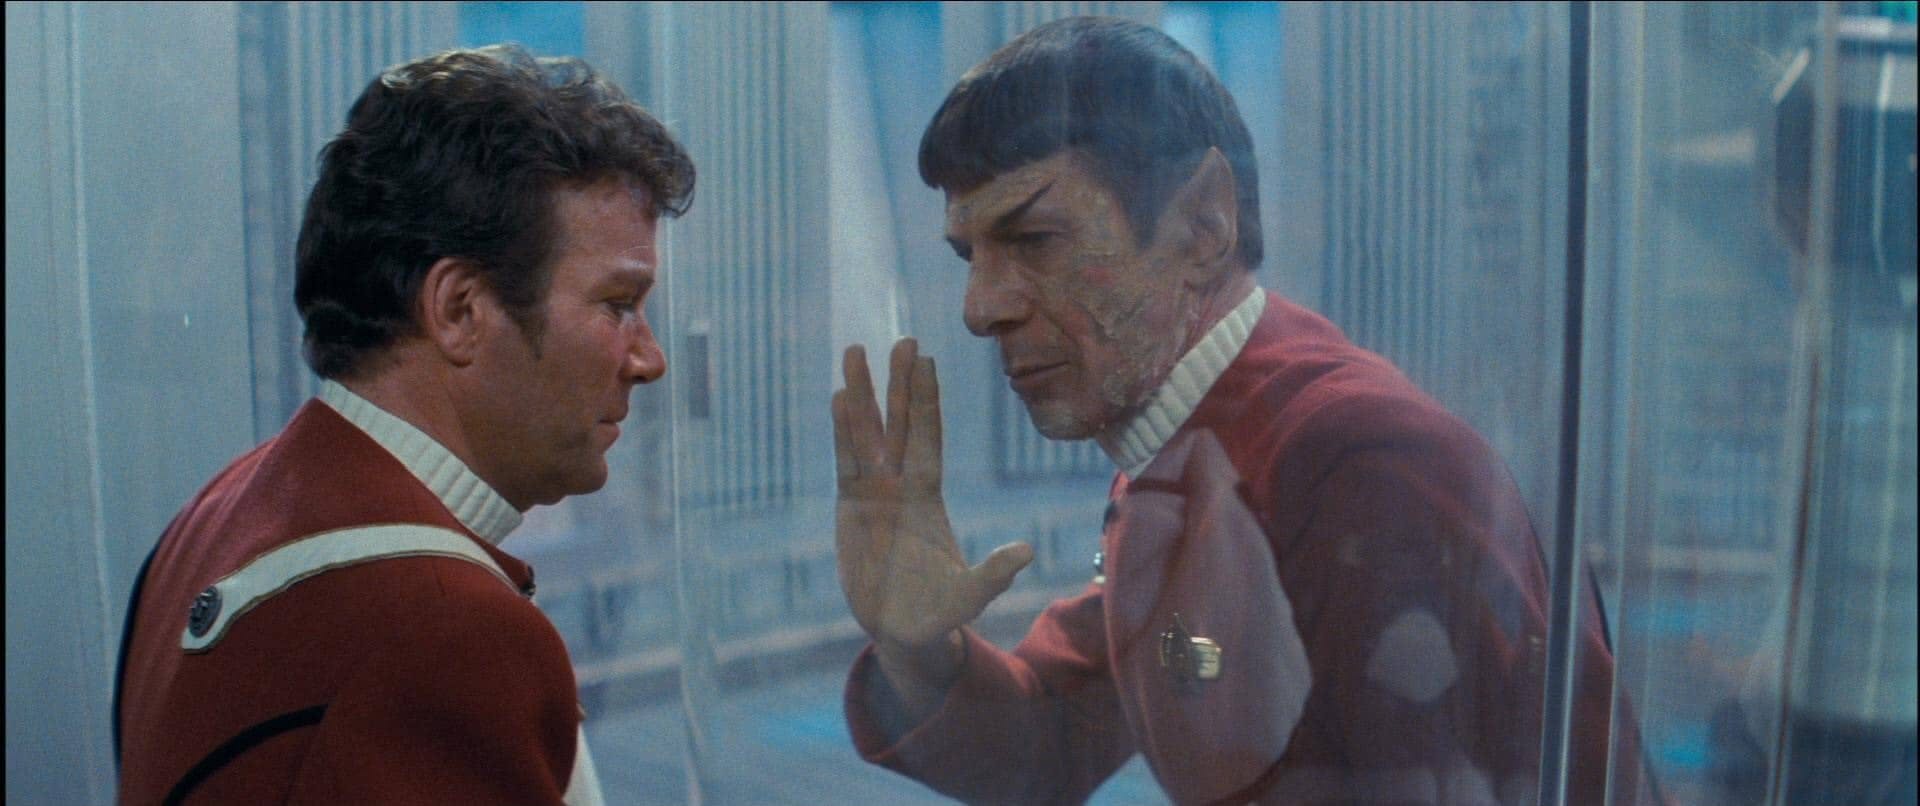 Spock's death as seen in 